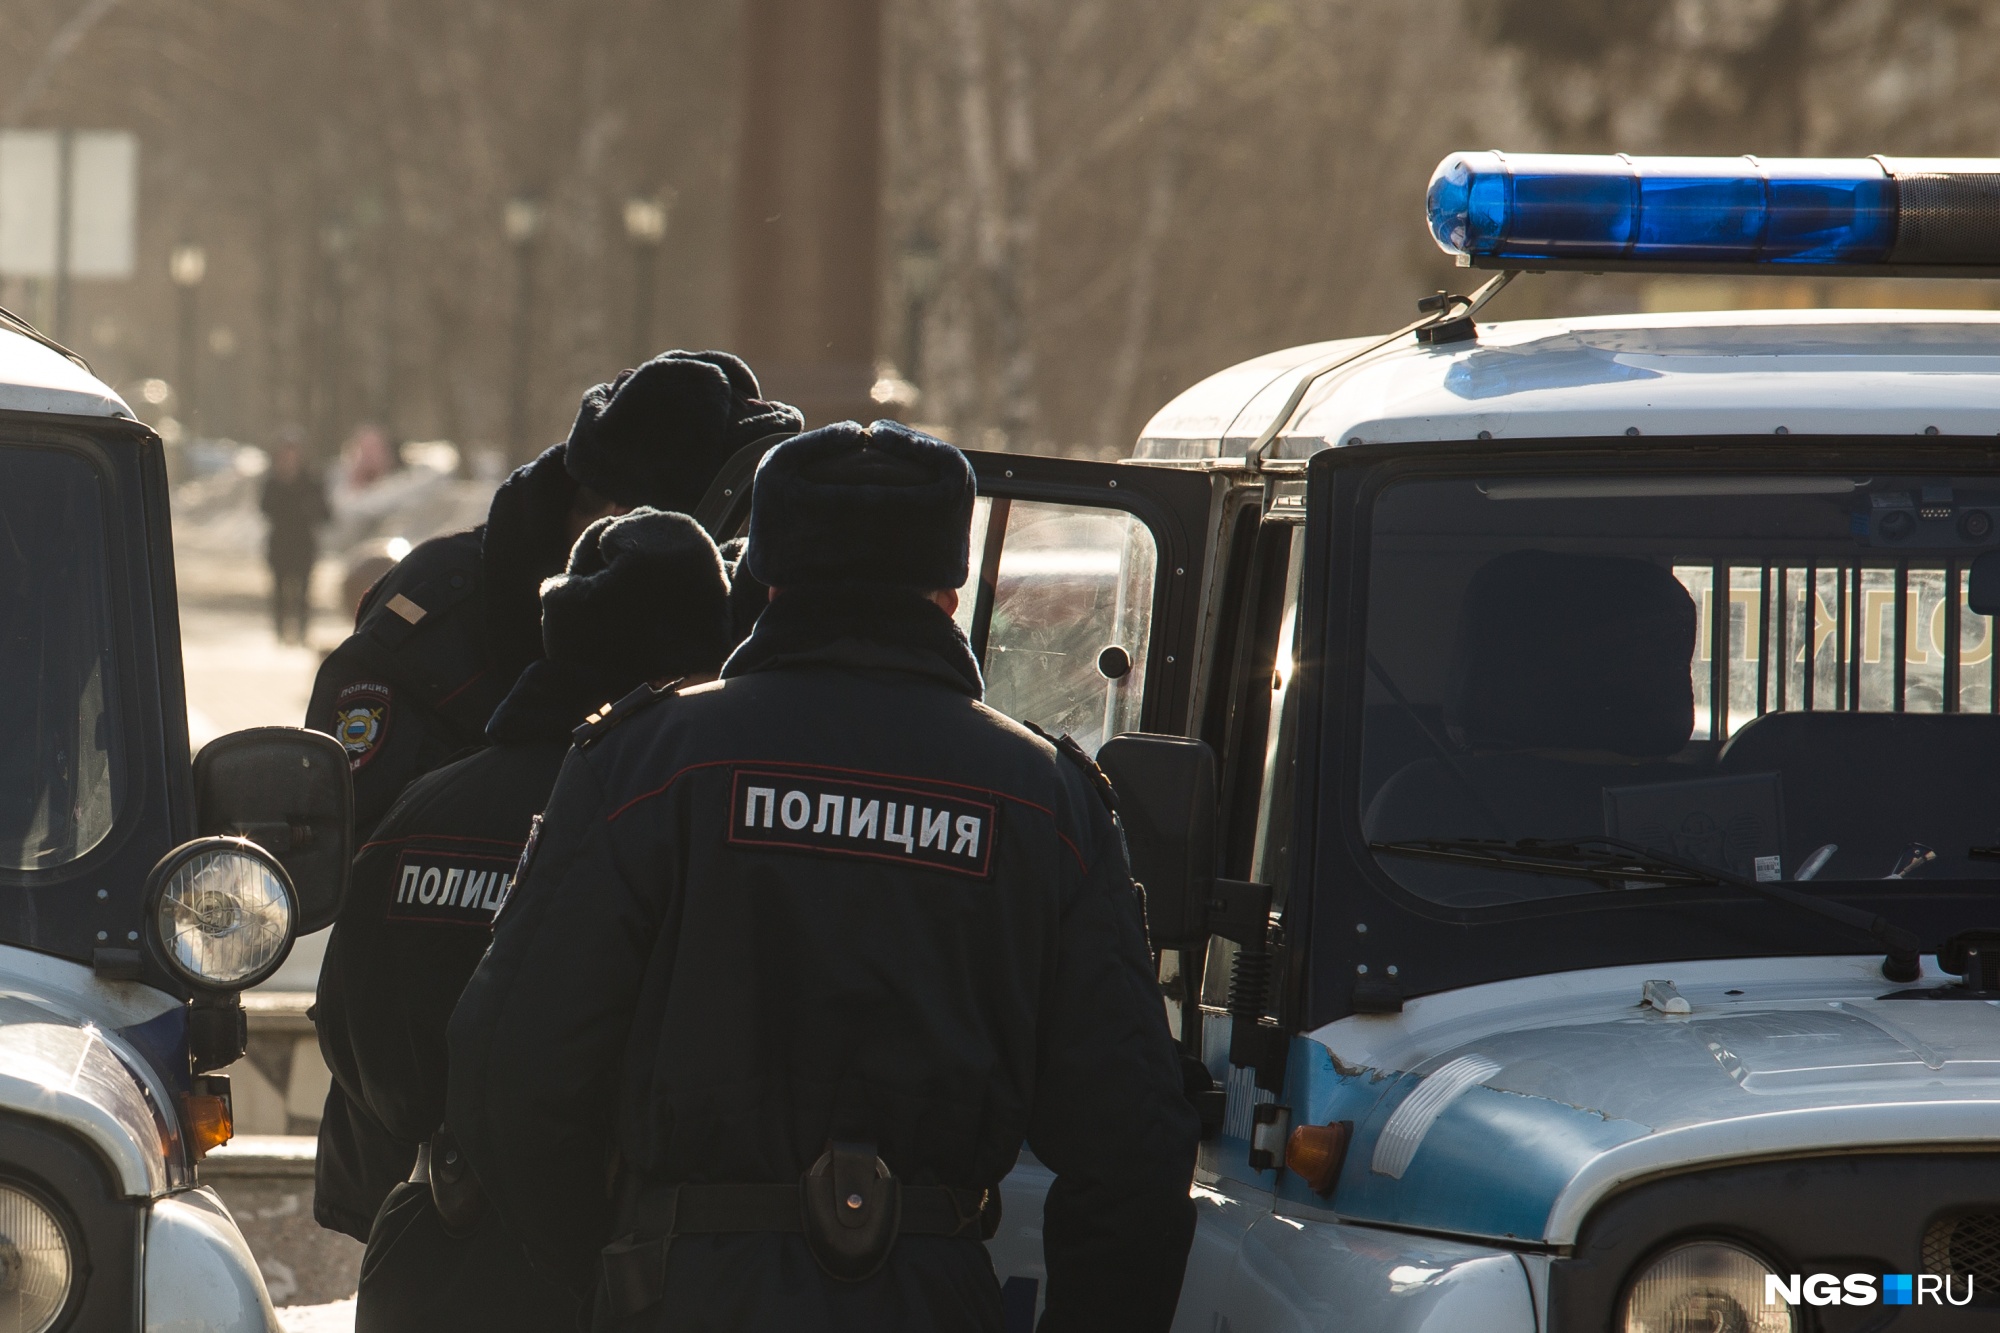 Сам позвонил в полицию: в МВД рассказали подробности убийства 29-летней женщины в Бердске